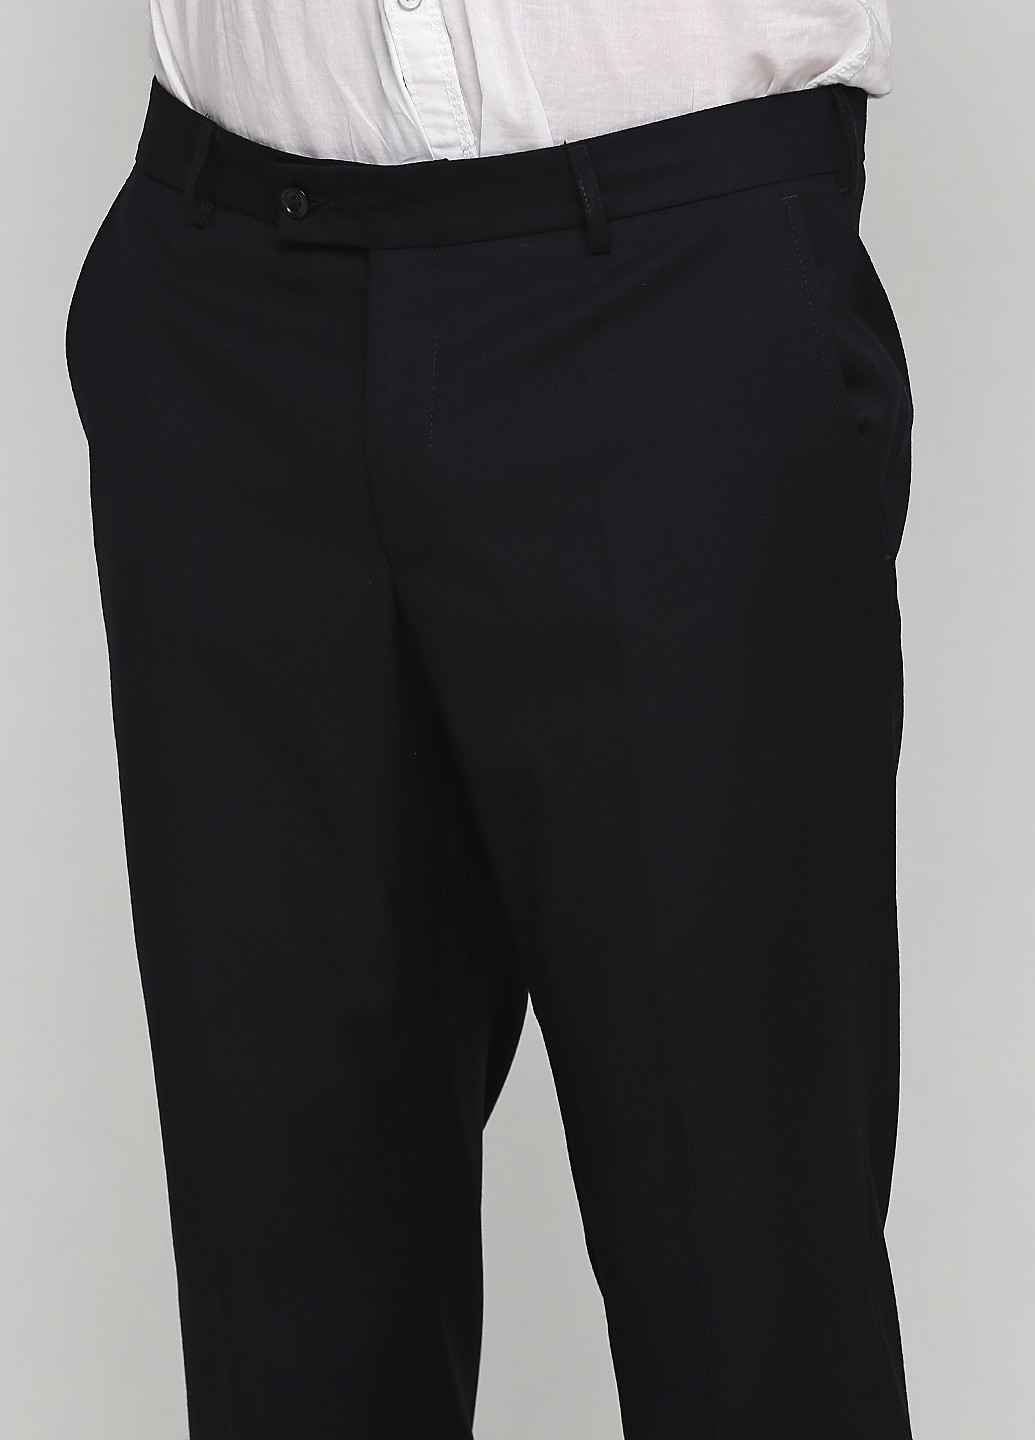 Черный демисезонный костюм (пиджак, брюки) с длинным рукавом, брючный Federico Cavallini